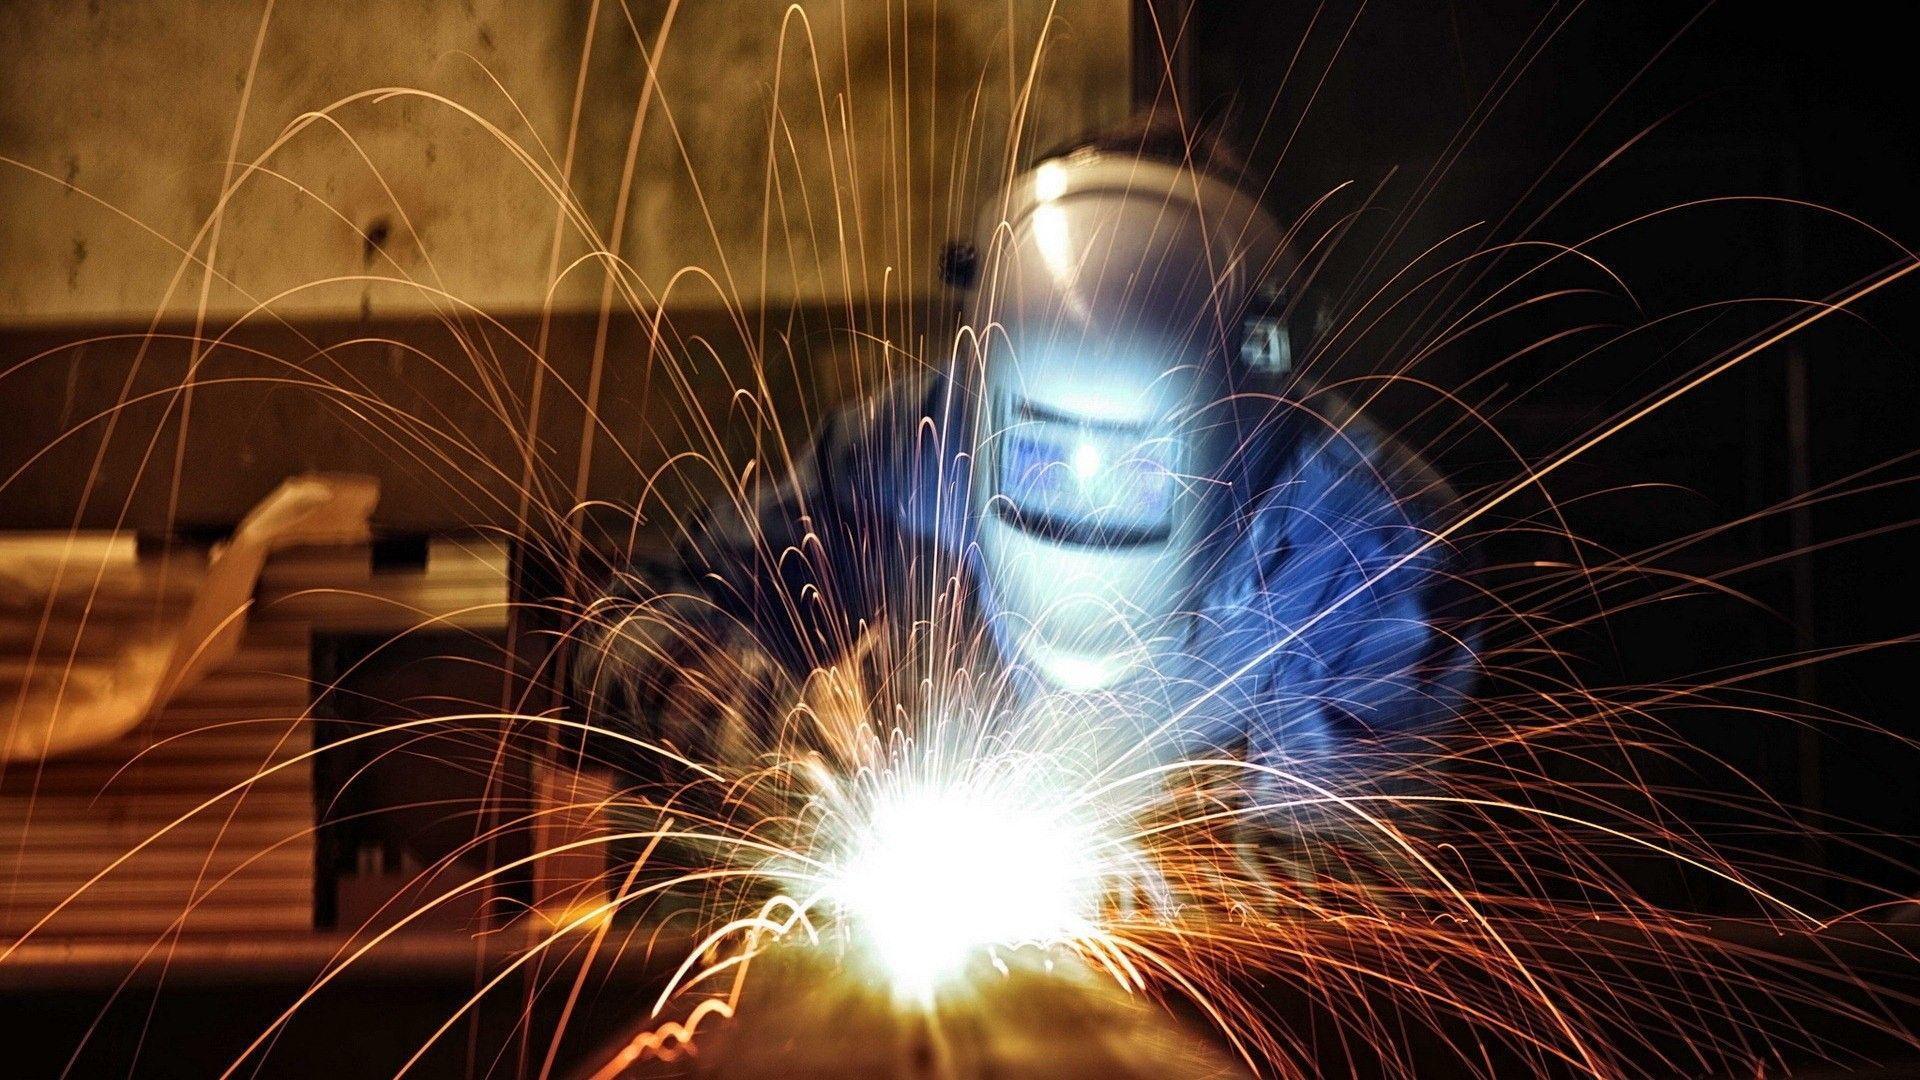 men, #workers, #welding, #sparks, #long exposure, #industrial